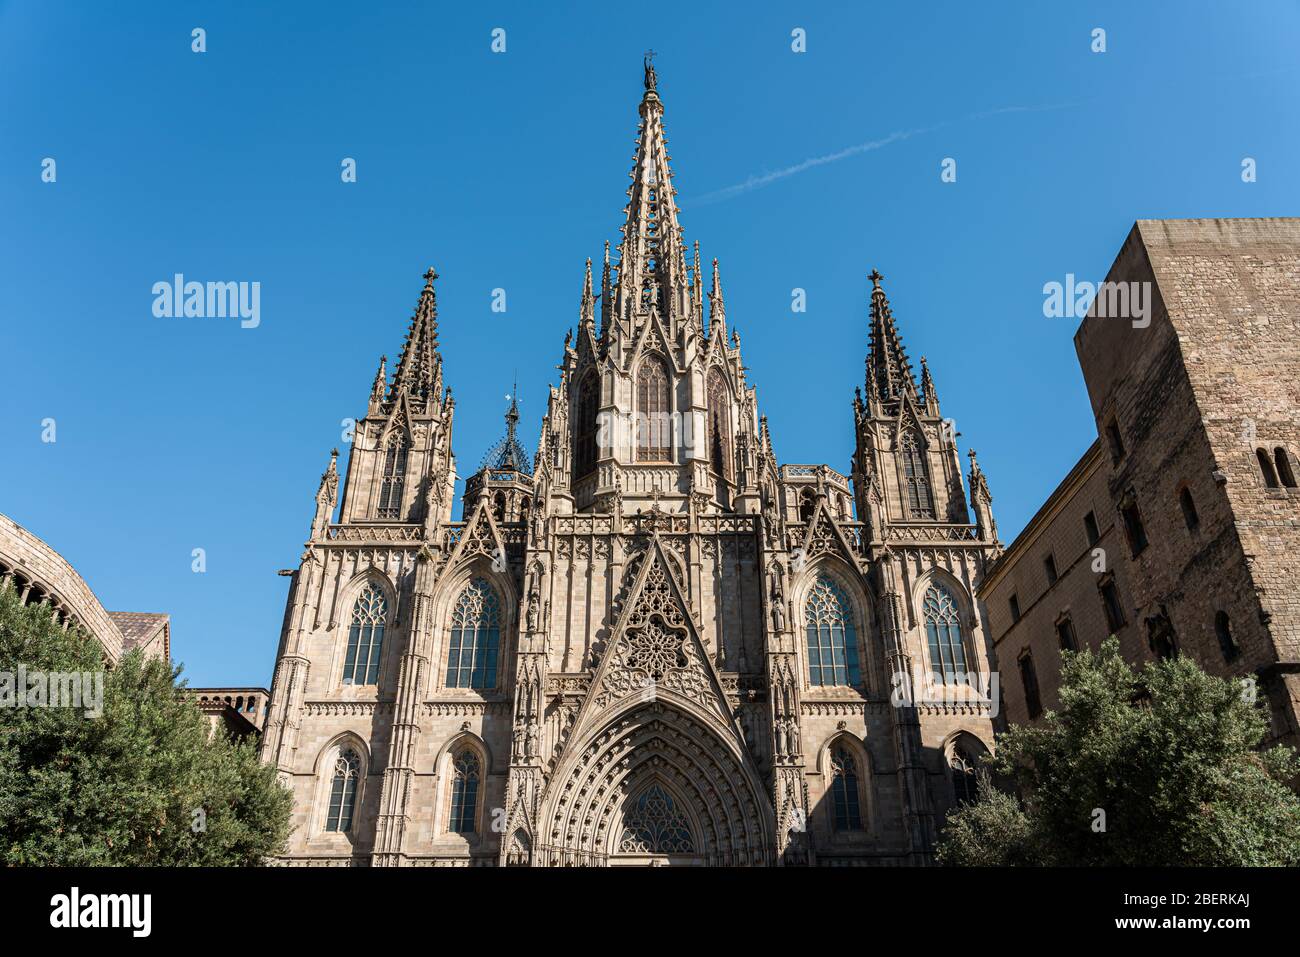 La Catedral de la Santa Cruz y Santa Eulalia, también conocida como Catedral  de Barcelona, es una iglesia gótica situada en el casco antiguo de Barcelona  y era una iglesia de gran